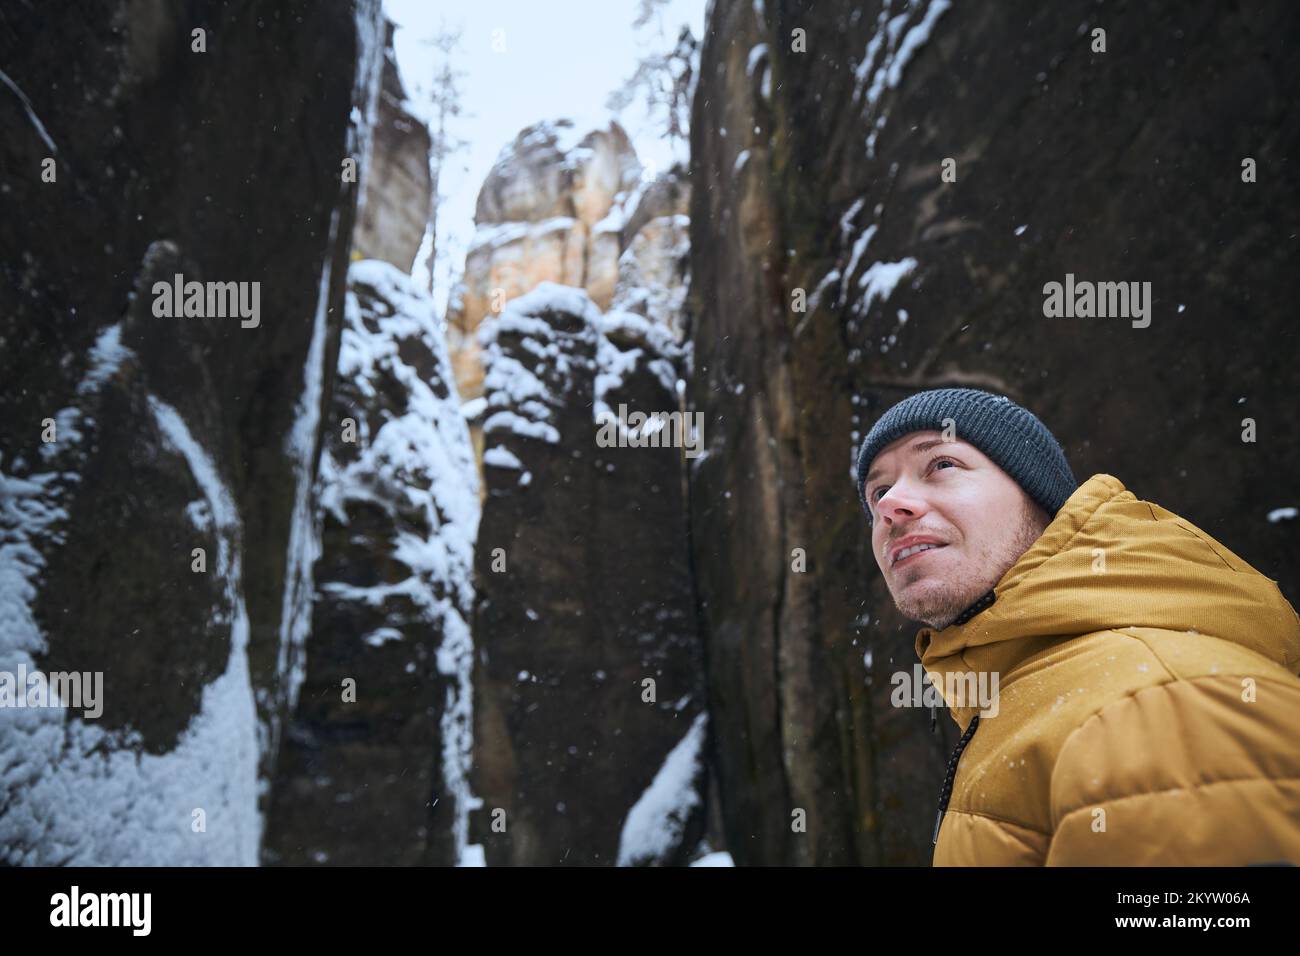 Portrat des Menschen inmitten von verschneiten Felsen am Winterfrosttag. Stockfoto